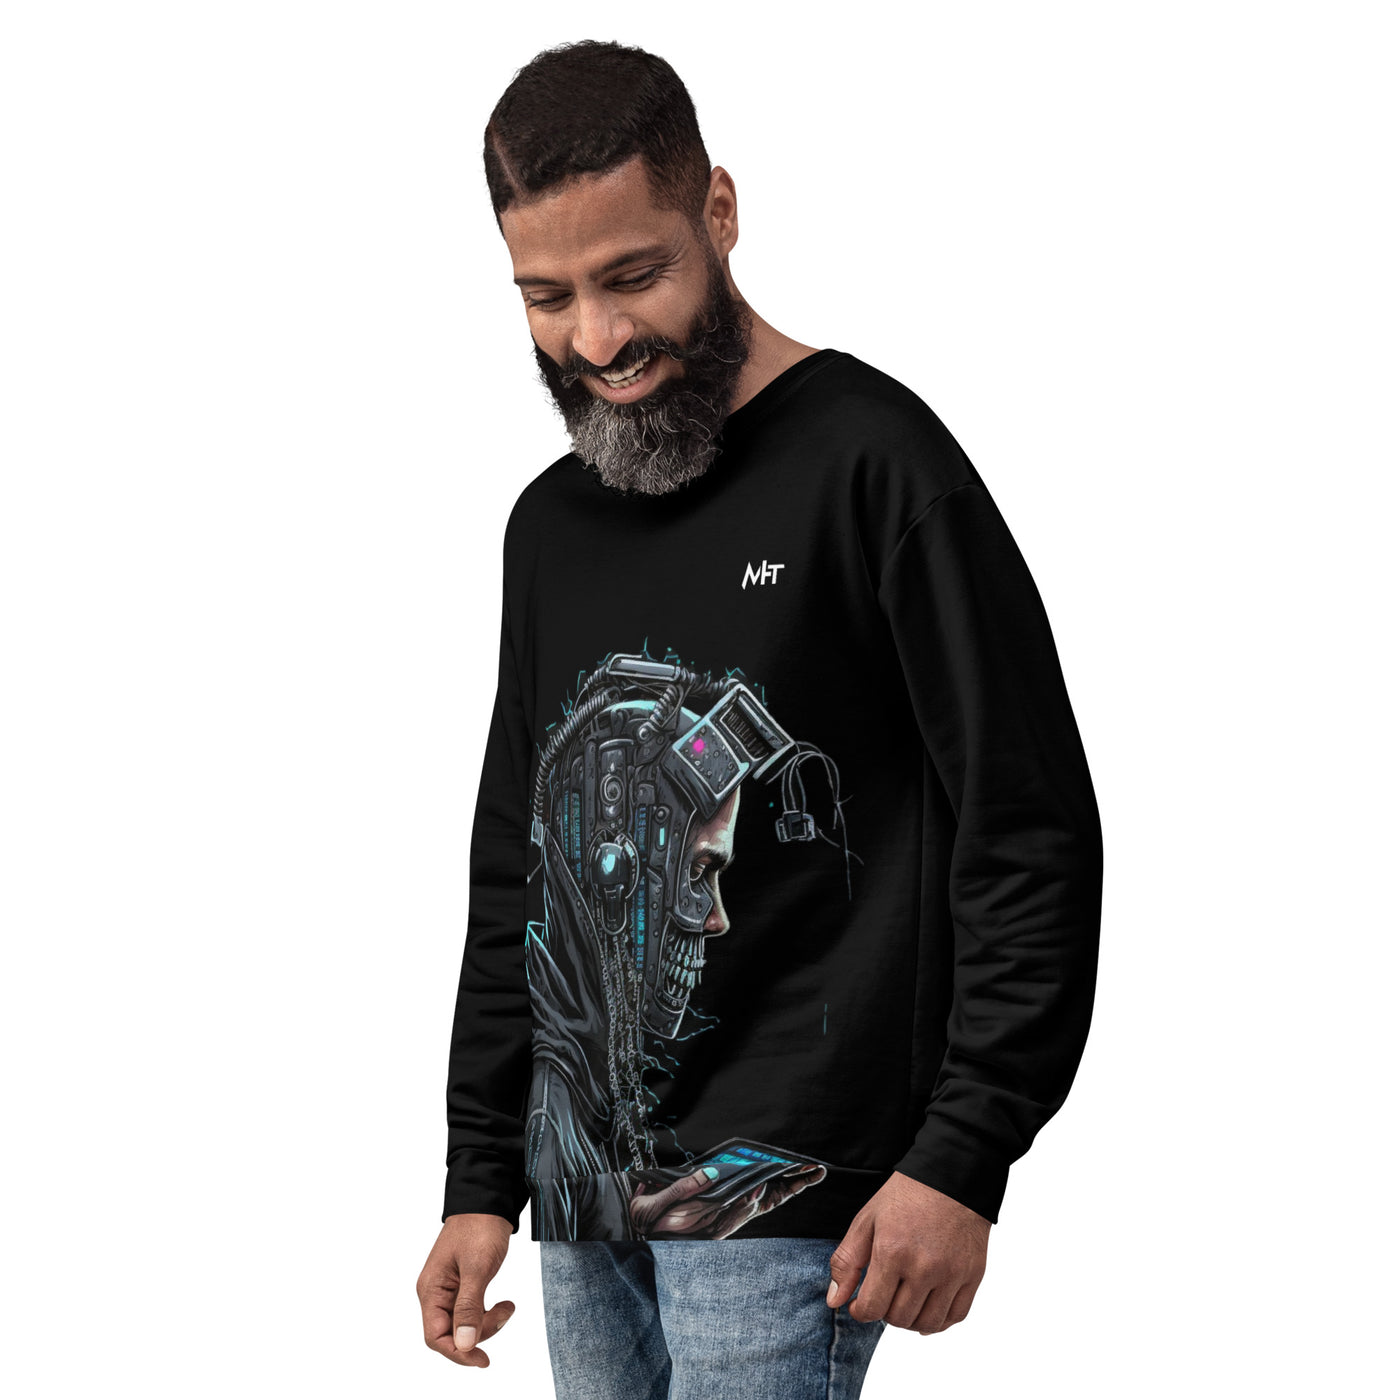 CyberWare Assassin V2 - Unisex Sweatshirt